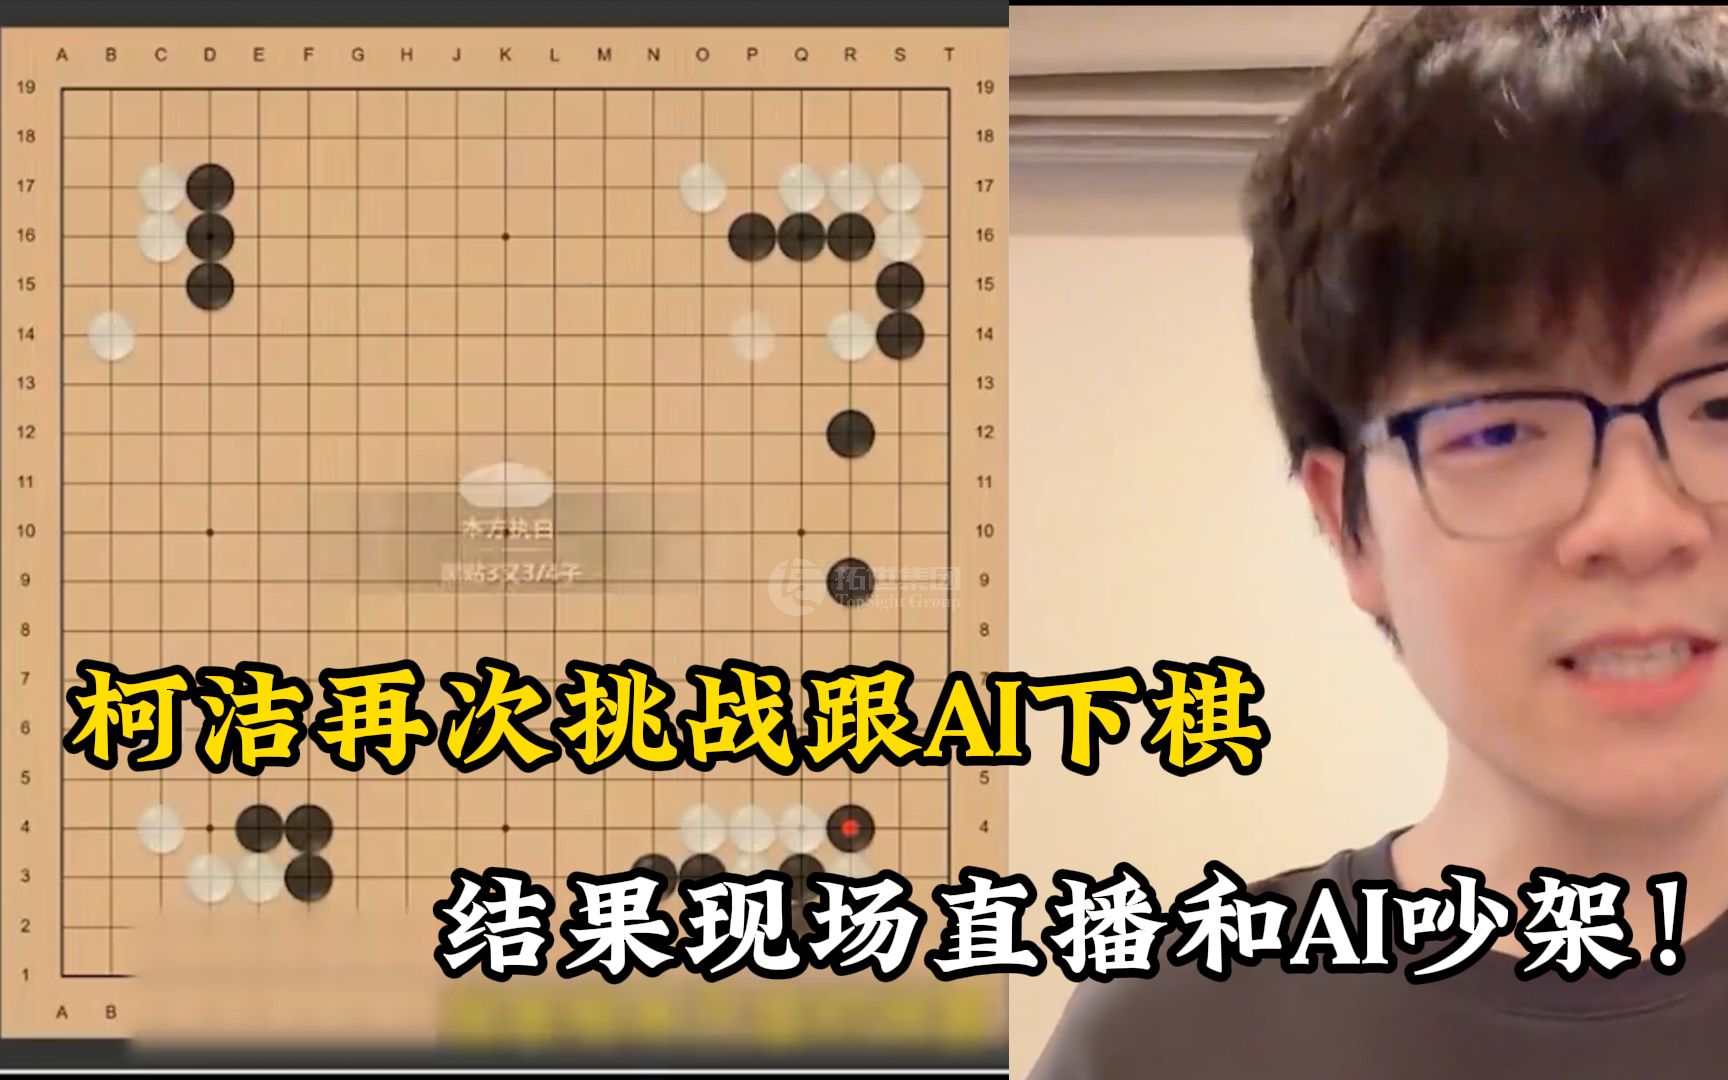 柯洁再次挑战跟AI下棋，结果现场直播和AI吵架！